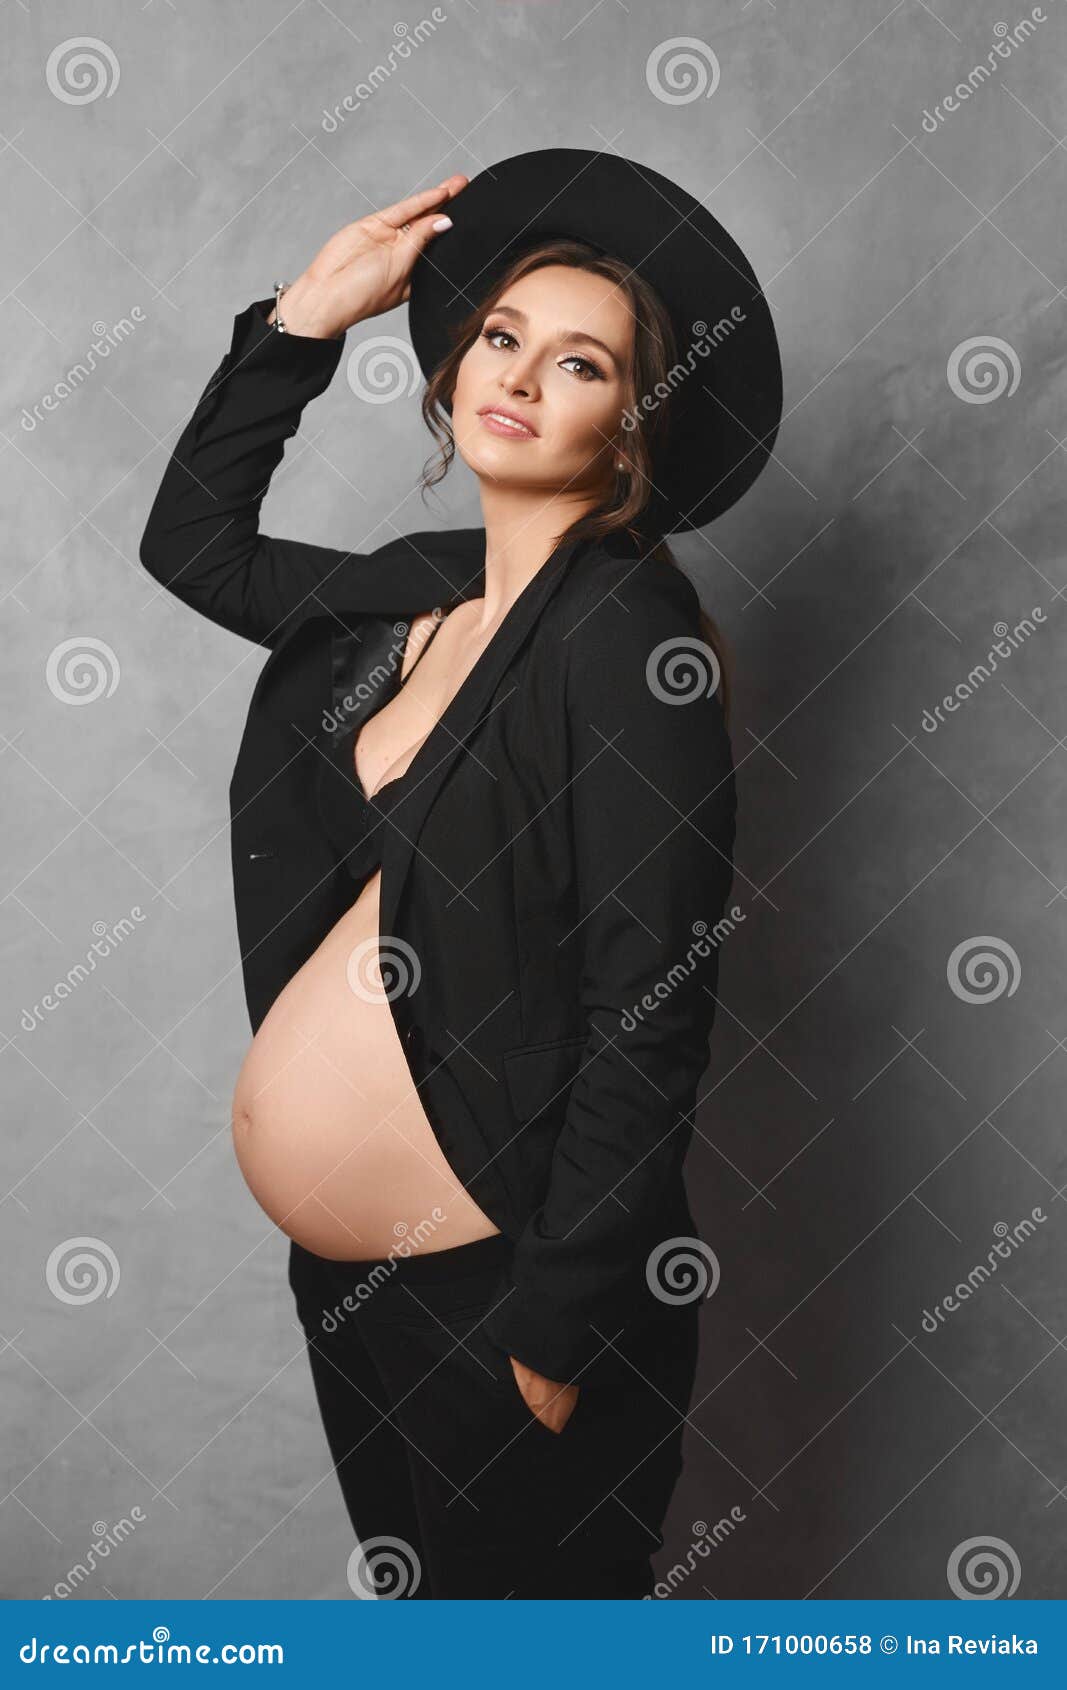 Best of Tumblr pregnant lingerie